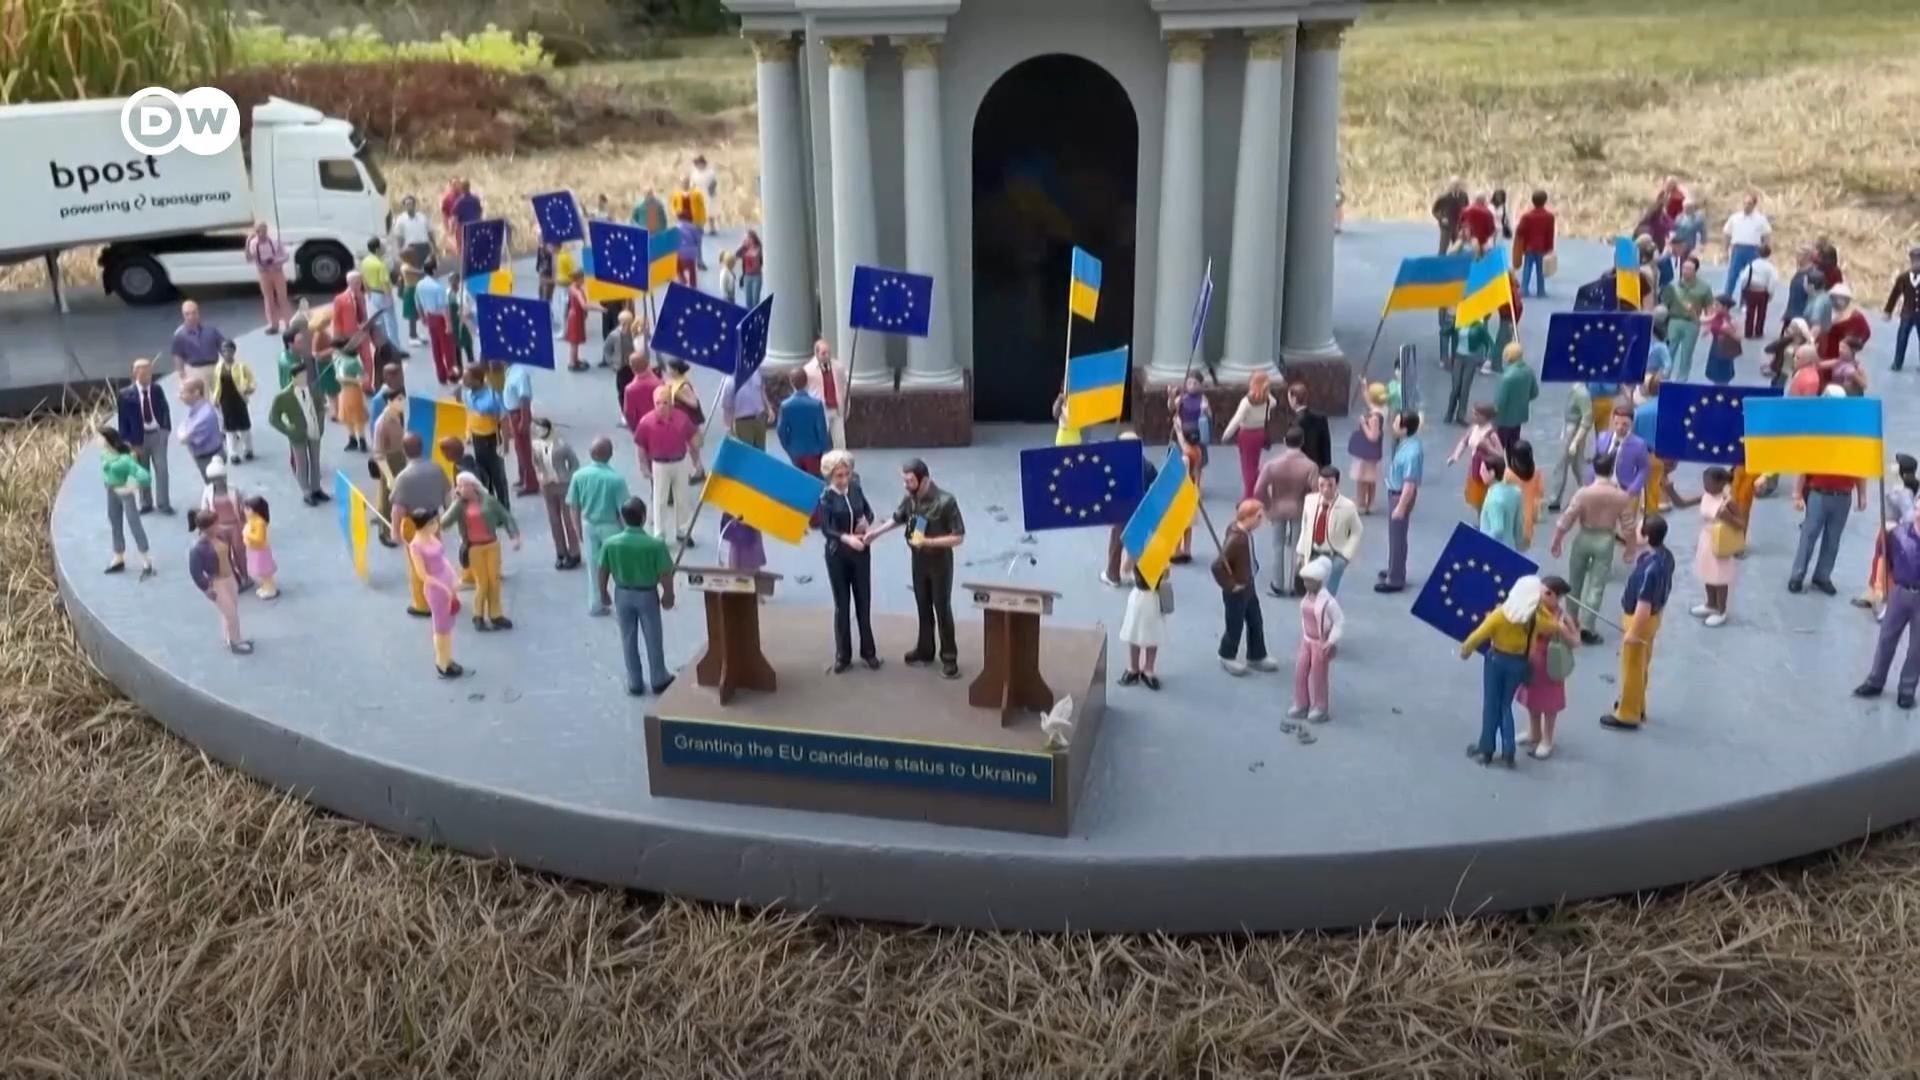 У парку Міні-Європа в Брюсселі відкрили новий експонат на знак солідарності з Україною. Дивіться, як це виглядає.